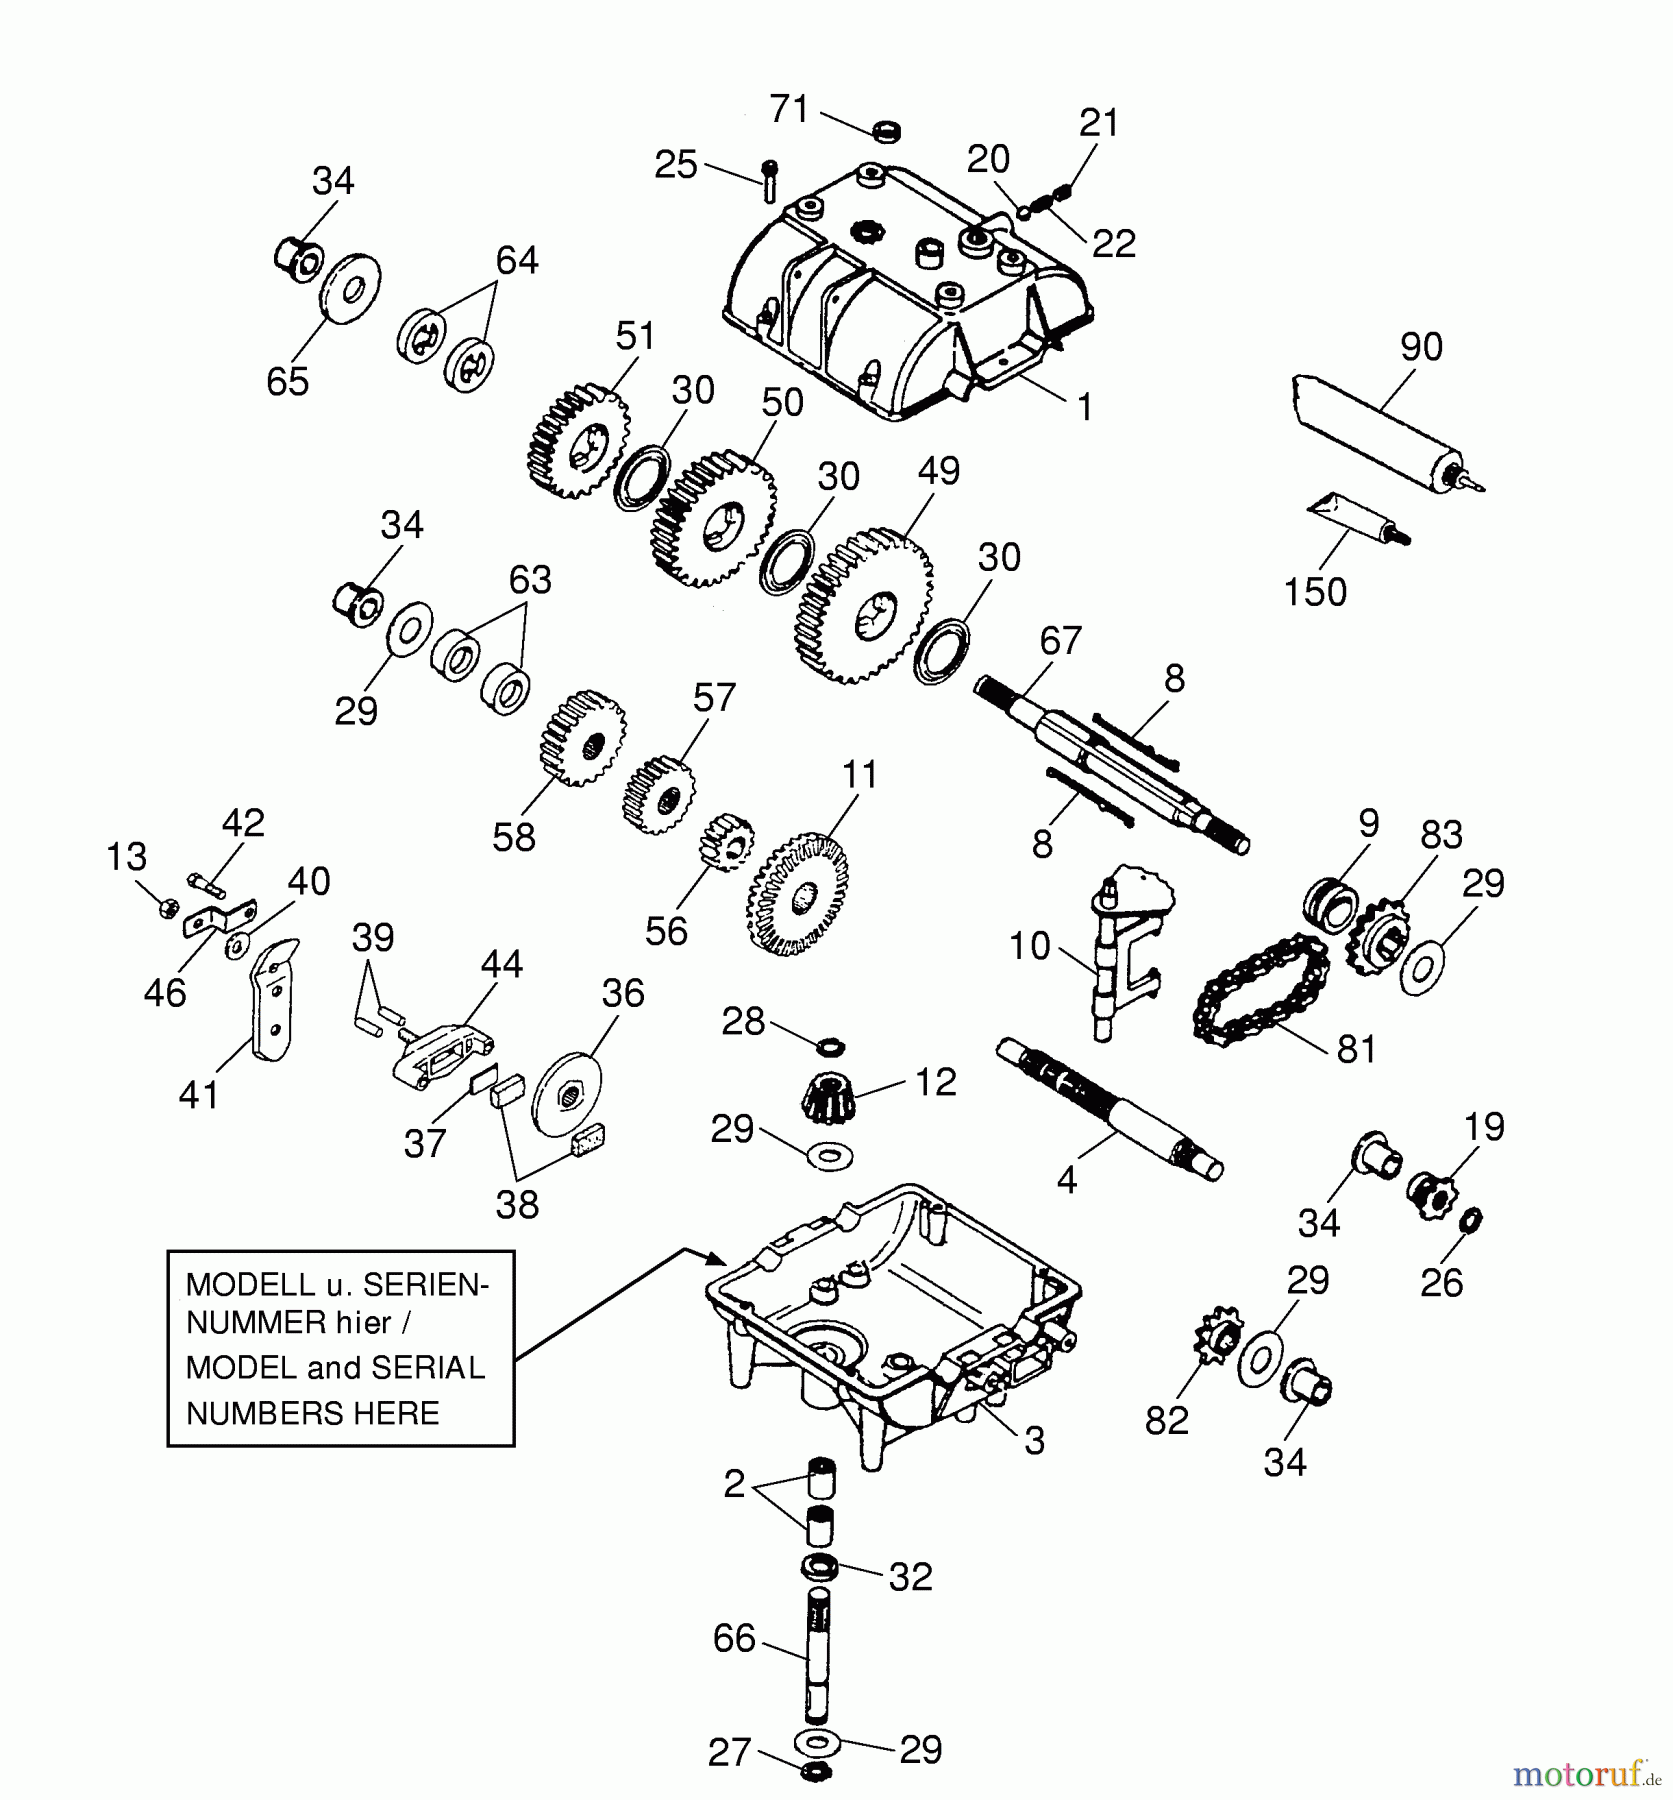  Wolf-Garten Scooter OHV 3 6995000 Series B  (2001) Gearbox